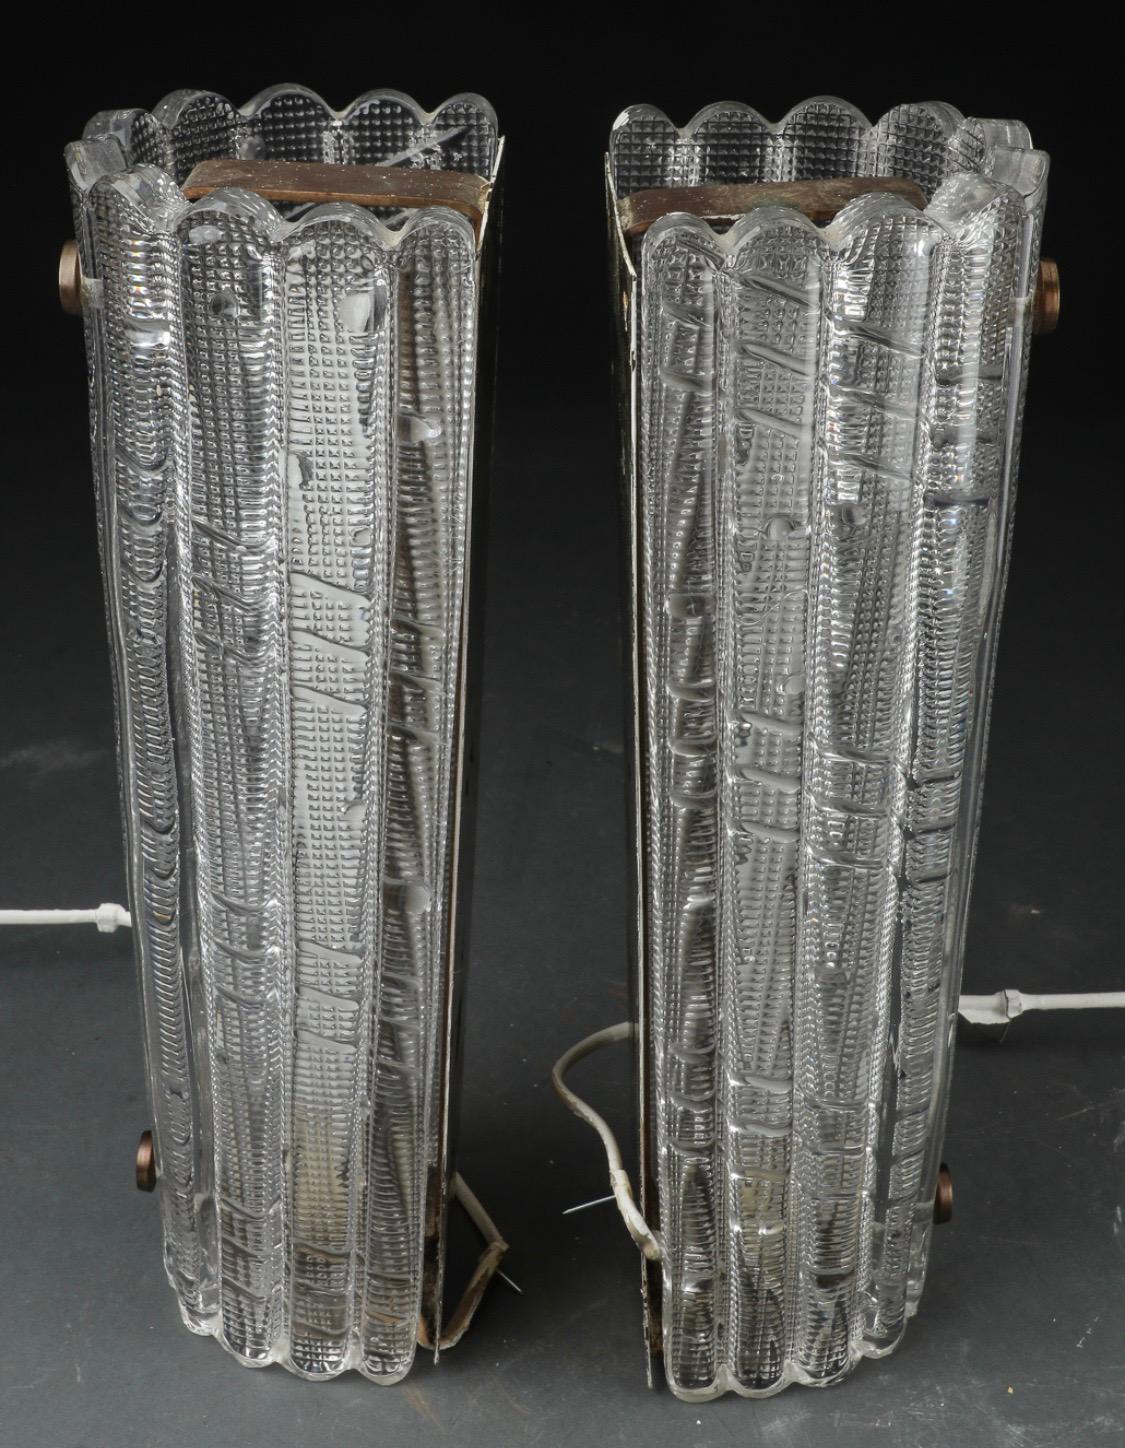 Großes Paar Orrefors-Leuchten von Carl Fagerlund aus den 1950er Jahren, Messingrahmen mit einer Edison-Fassung, bedeckt mit dicken Kristallschirmen mit Art-Déco-Details im Glas.
Neu verkabelt.
  